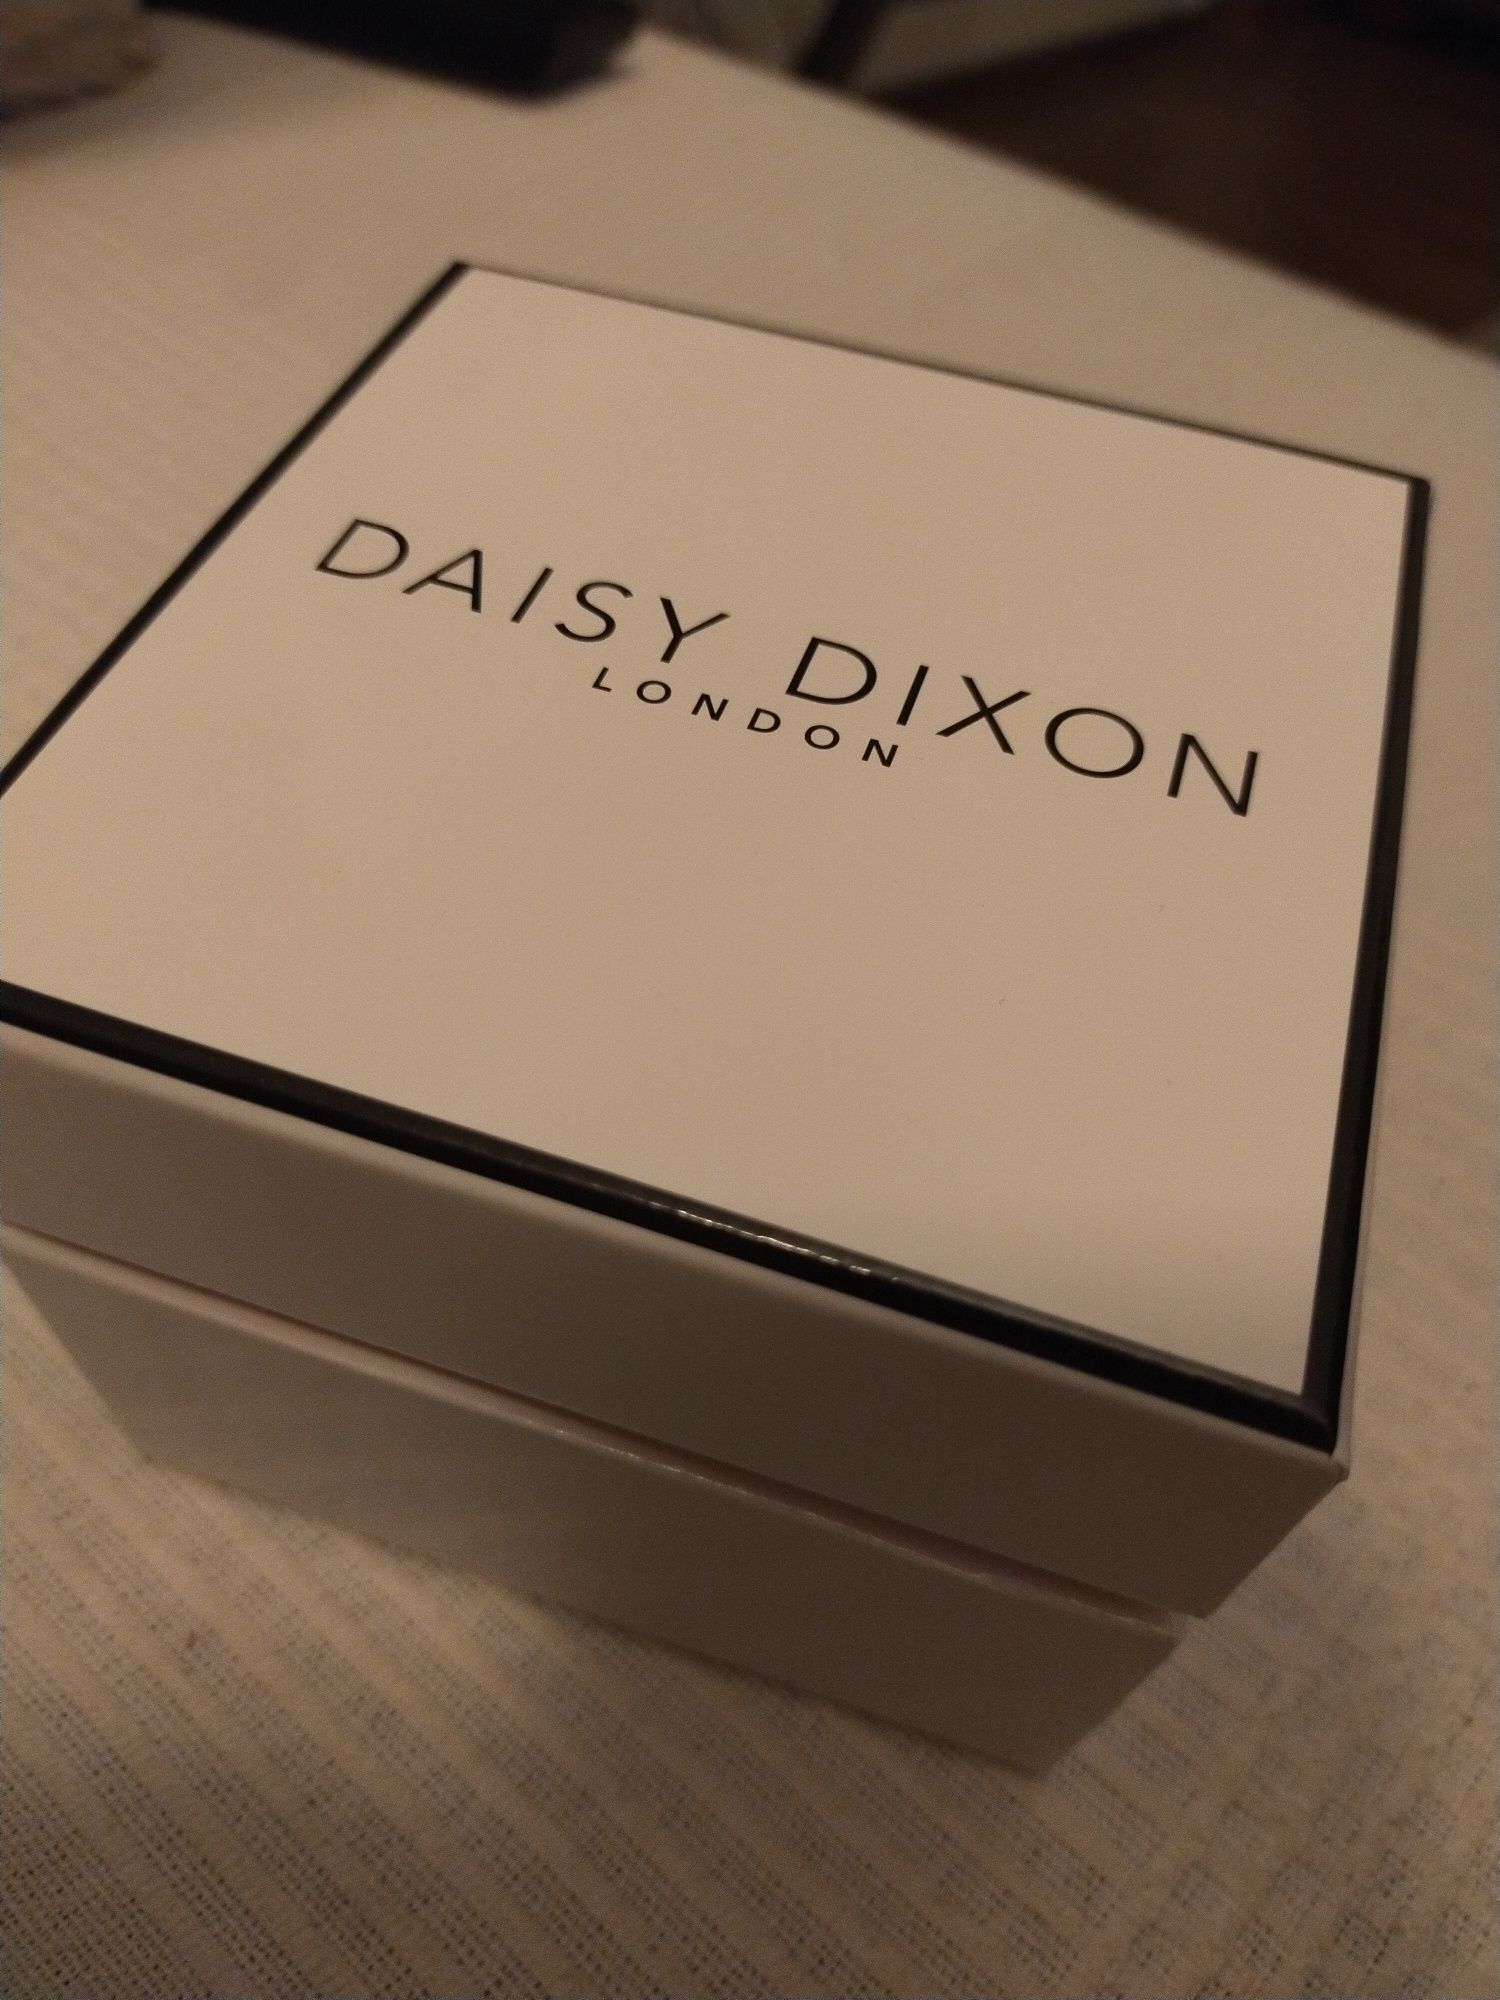 Daisy Dixon cena z wysyłką, zegarek nowy damski. Zegarek damski